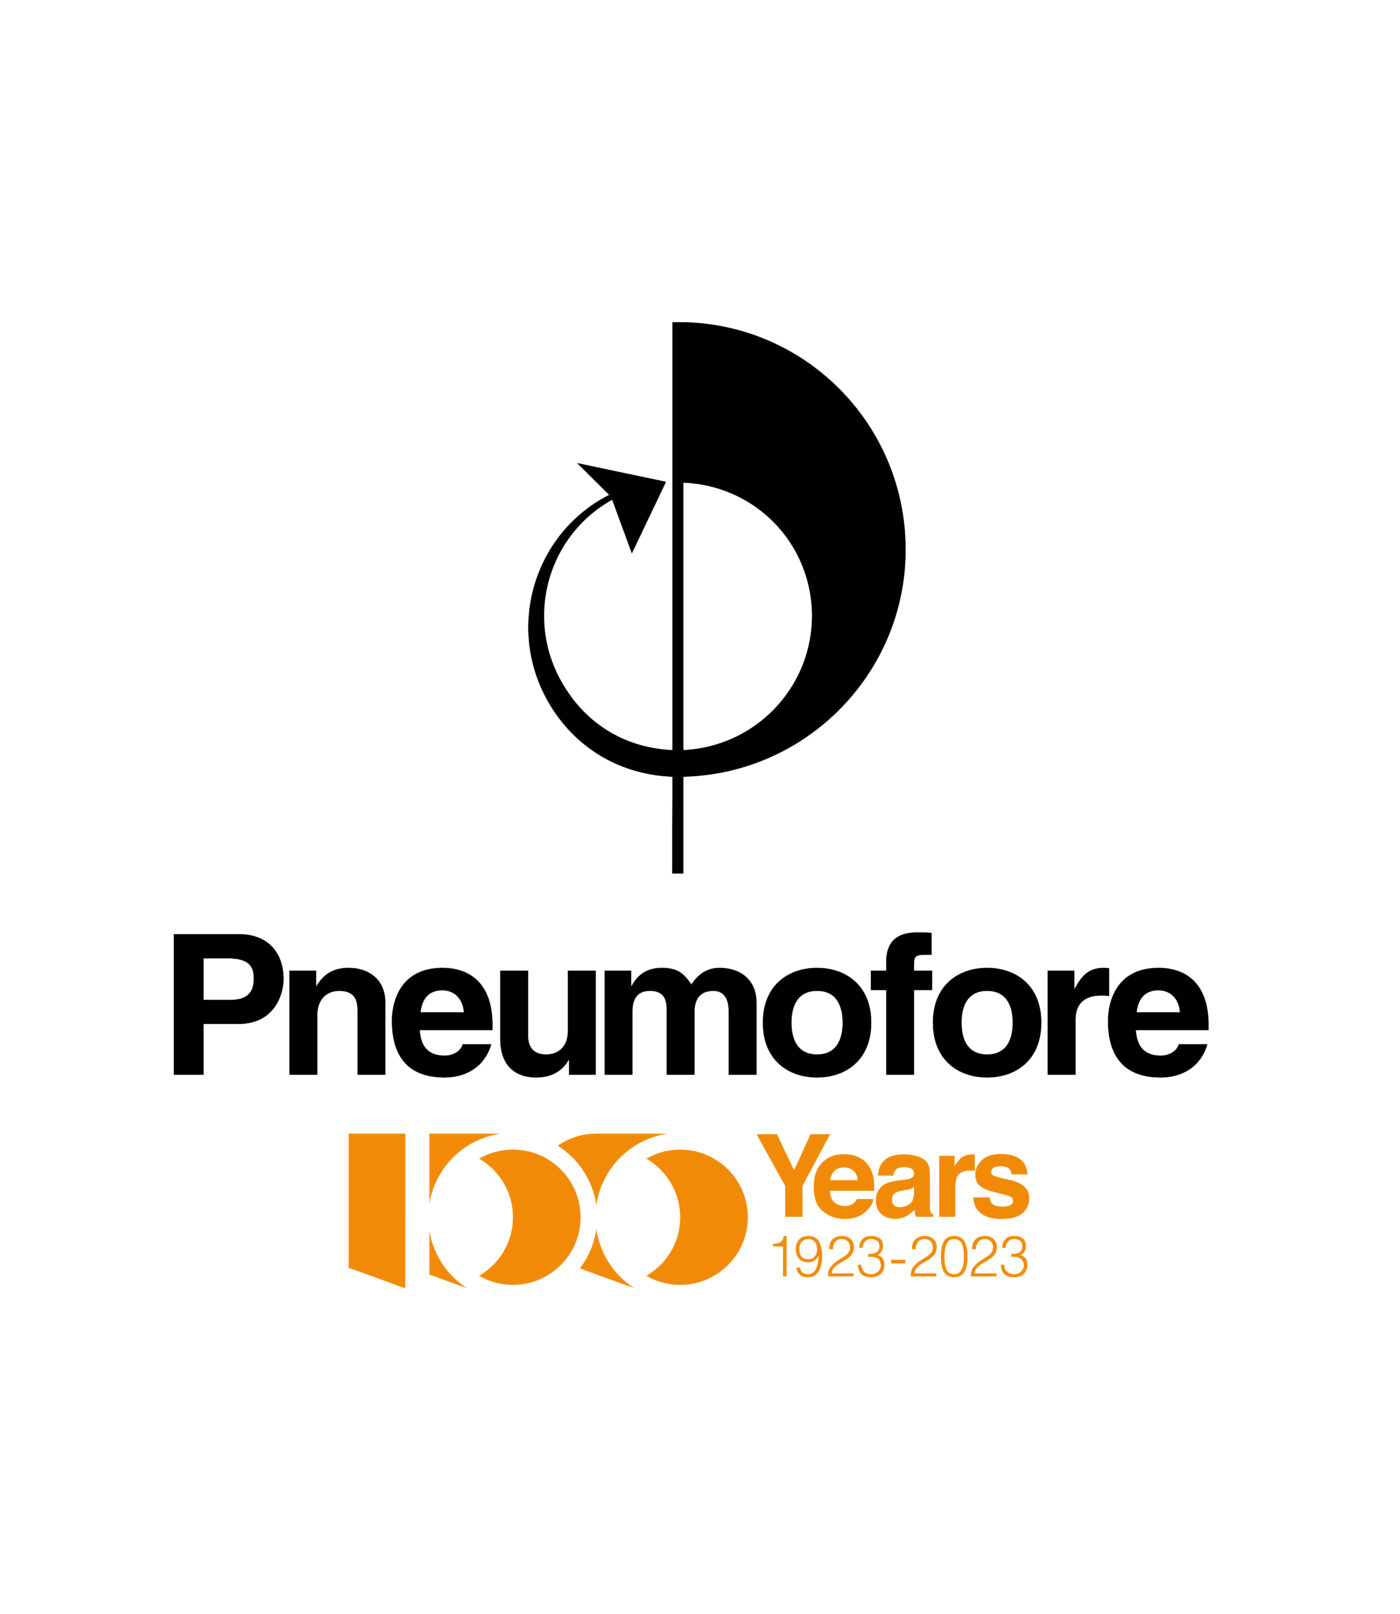 Pneumofore Logo 100 Years Anniversary - Vertical (1)